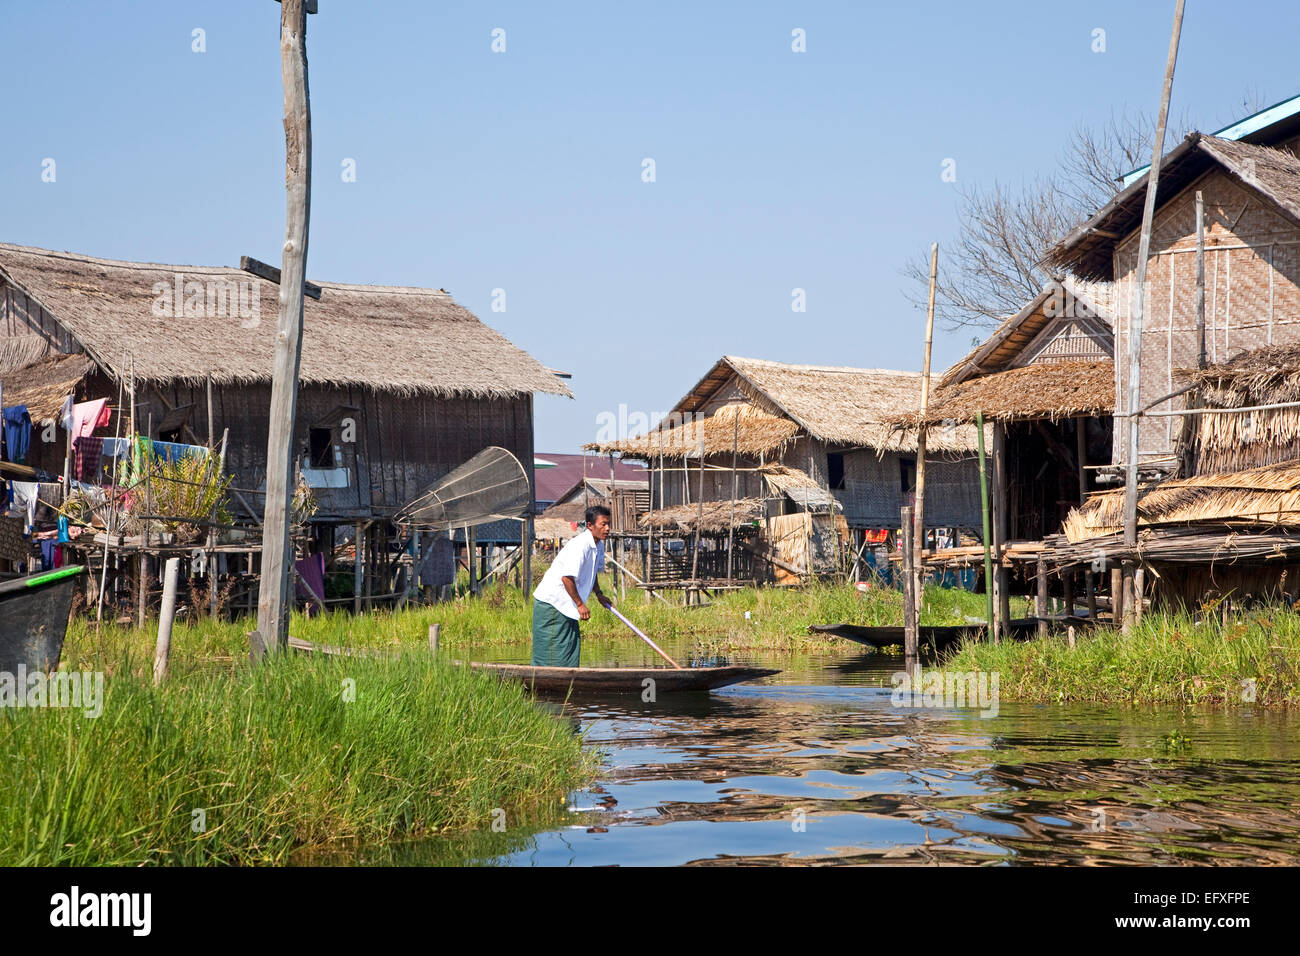 Dans l'homme ethnie Intha proa au village traditionnel avec des maisons sur pilotis en bambou dans le lac Inle, Nyaungshwe, Shan State, Myanmar / Birmanie Banque D'Images